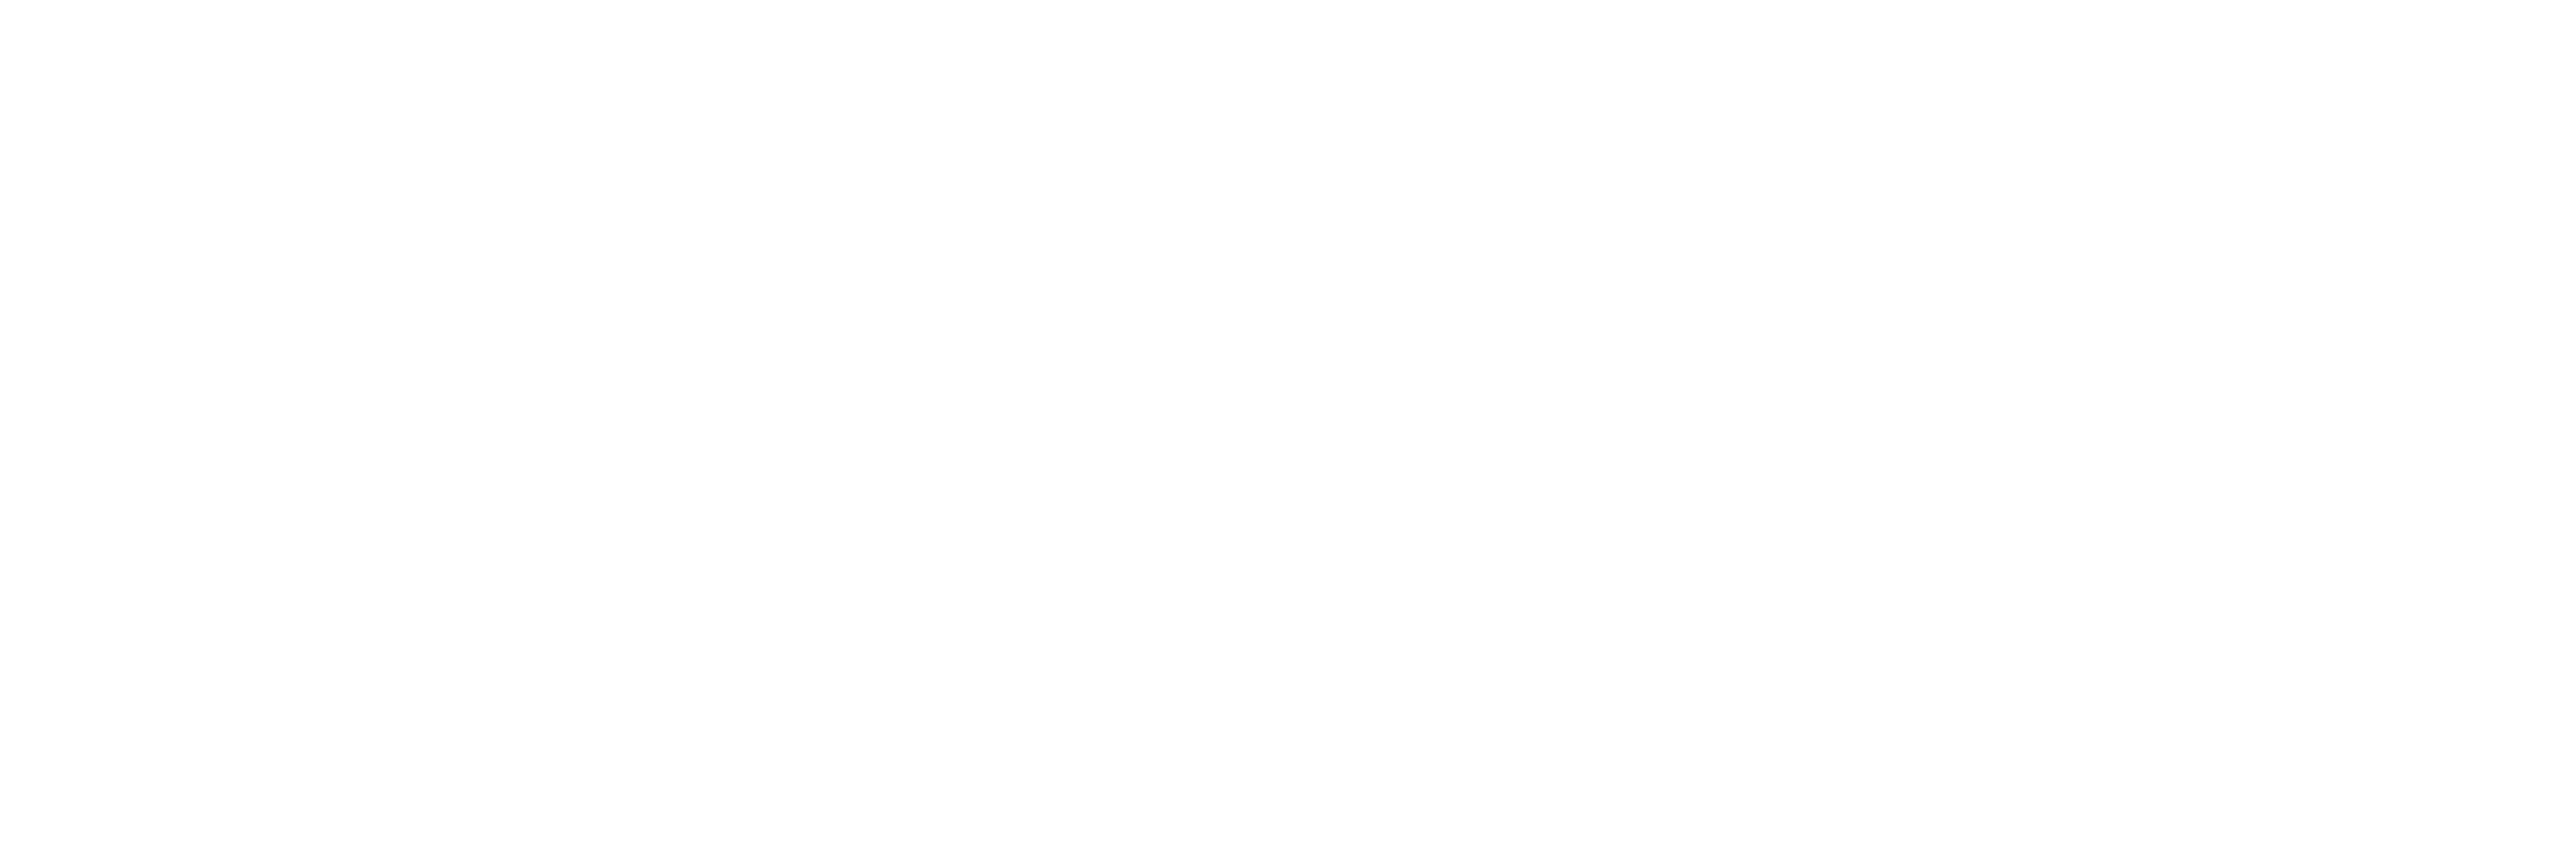 Junior Achievement of Maine, Inc.